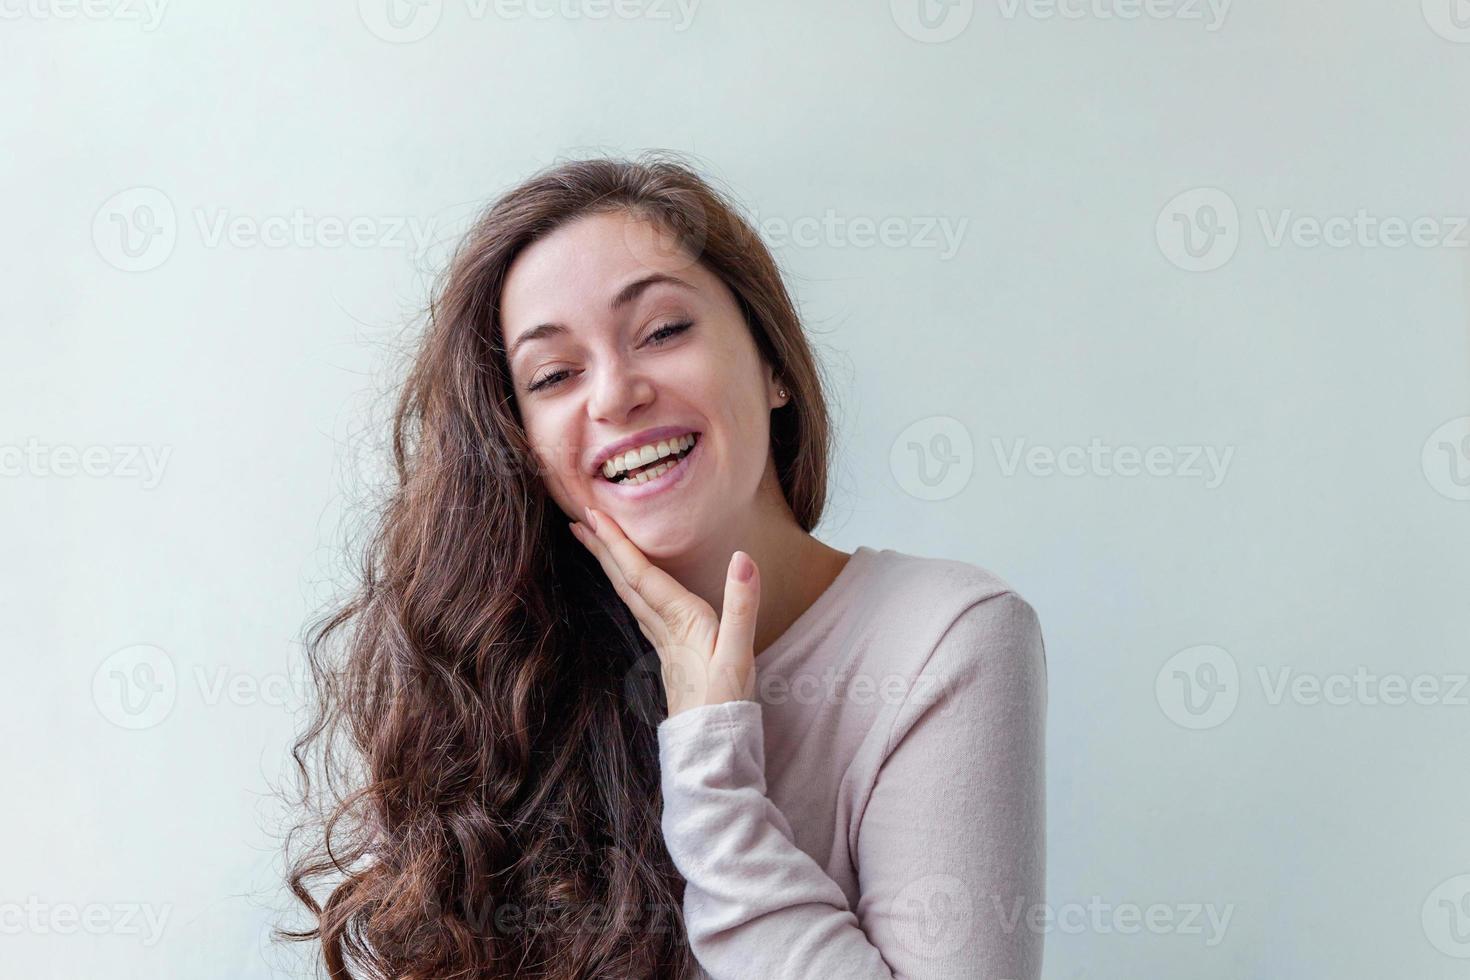 fille heureuse souriante. portrait de beauté jeune femme brune riante positive heureuse sur fond blanc isolé. femme européenne. émotion humaine positive expression faciale langage corporel. photo